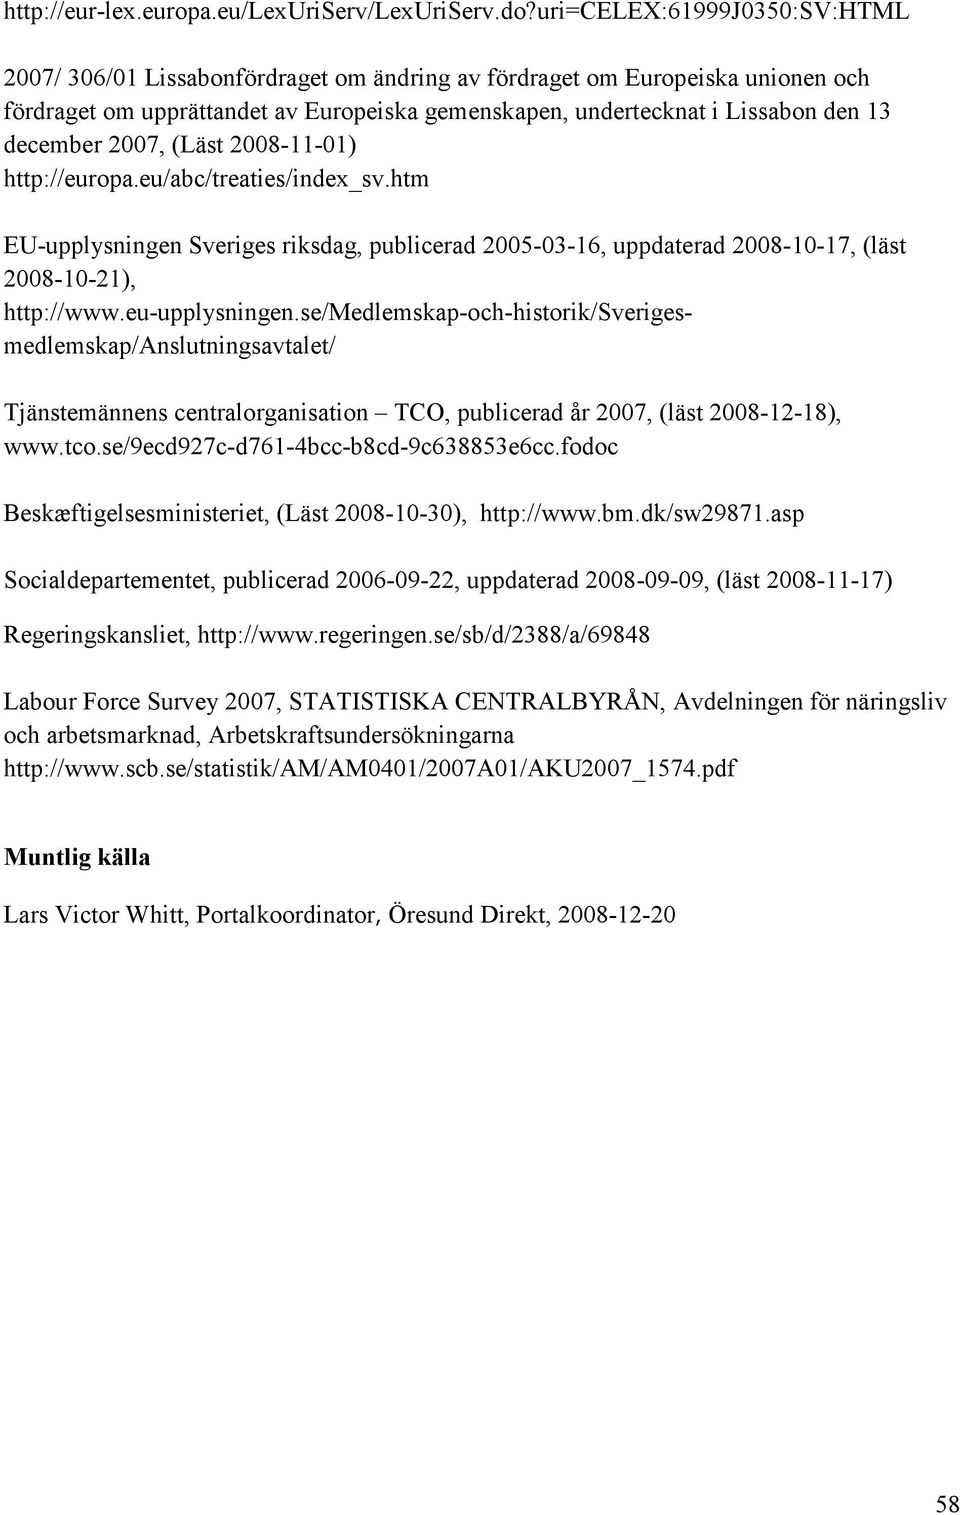 december 2007, (Läst 2008-11-01) http://europa.eu/abc/treaties/index_sv.htm EU-upplysningen Sveriges riksdag, publicerad 2005-03-16, uppdaterad 2008-10-17, (läst 2008-10-21), http://www.